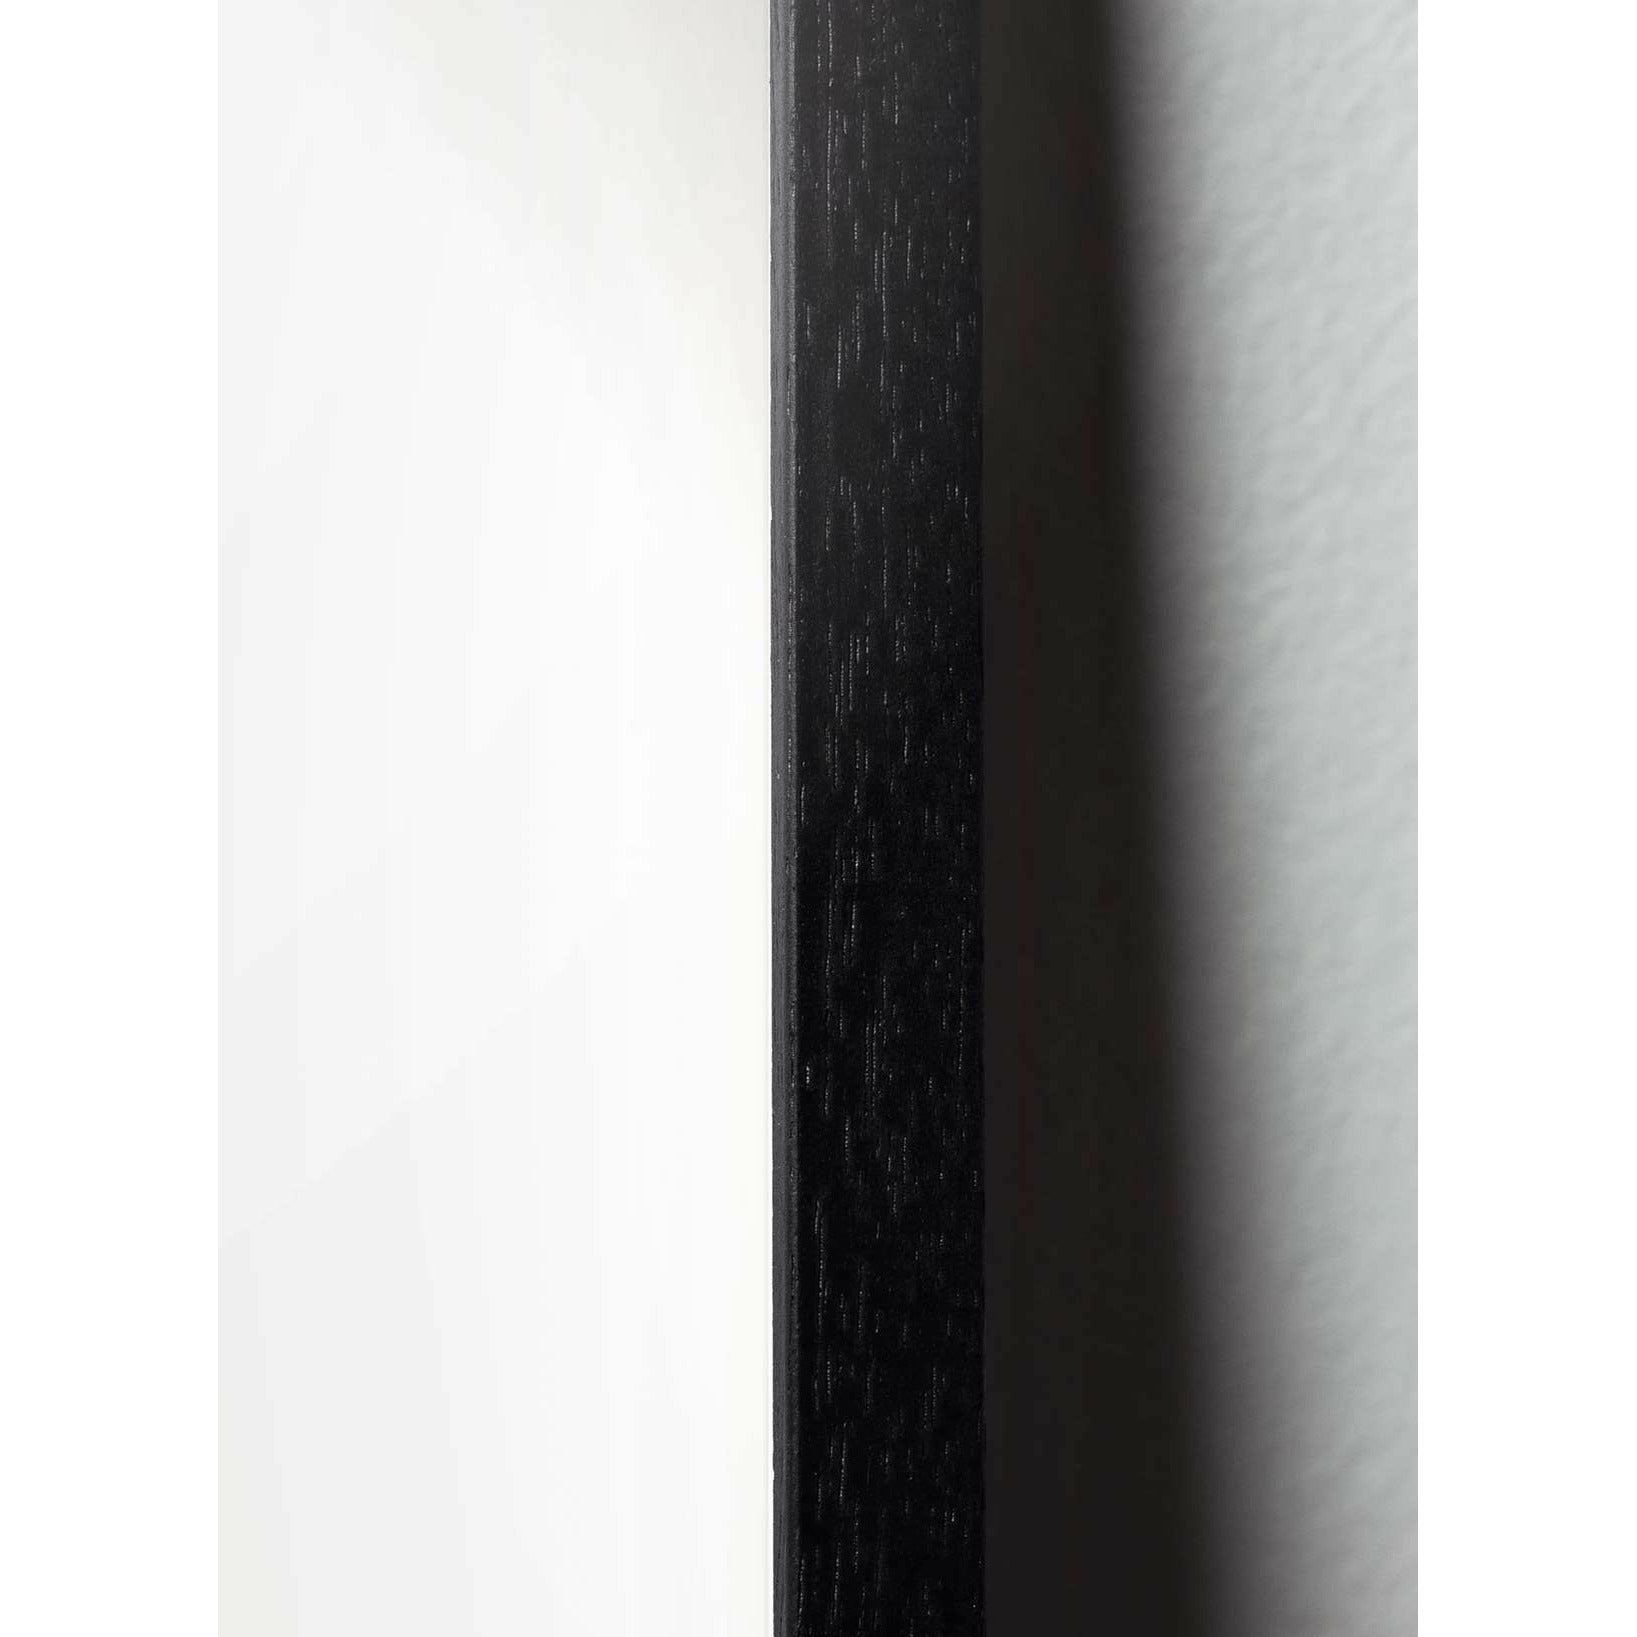 Brainchild Svan Line Affisch, ram i svart lackerat trä 50x70 cm, vit bakgrund